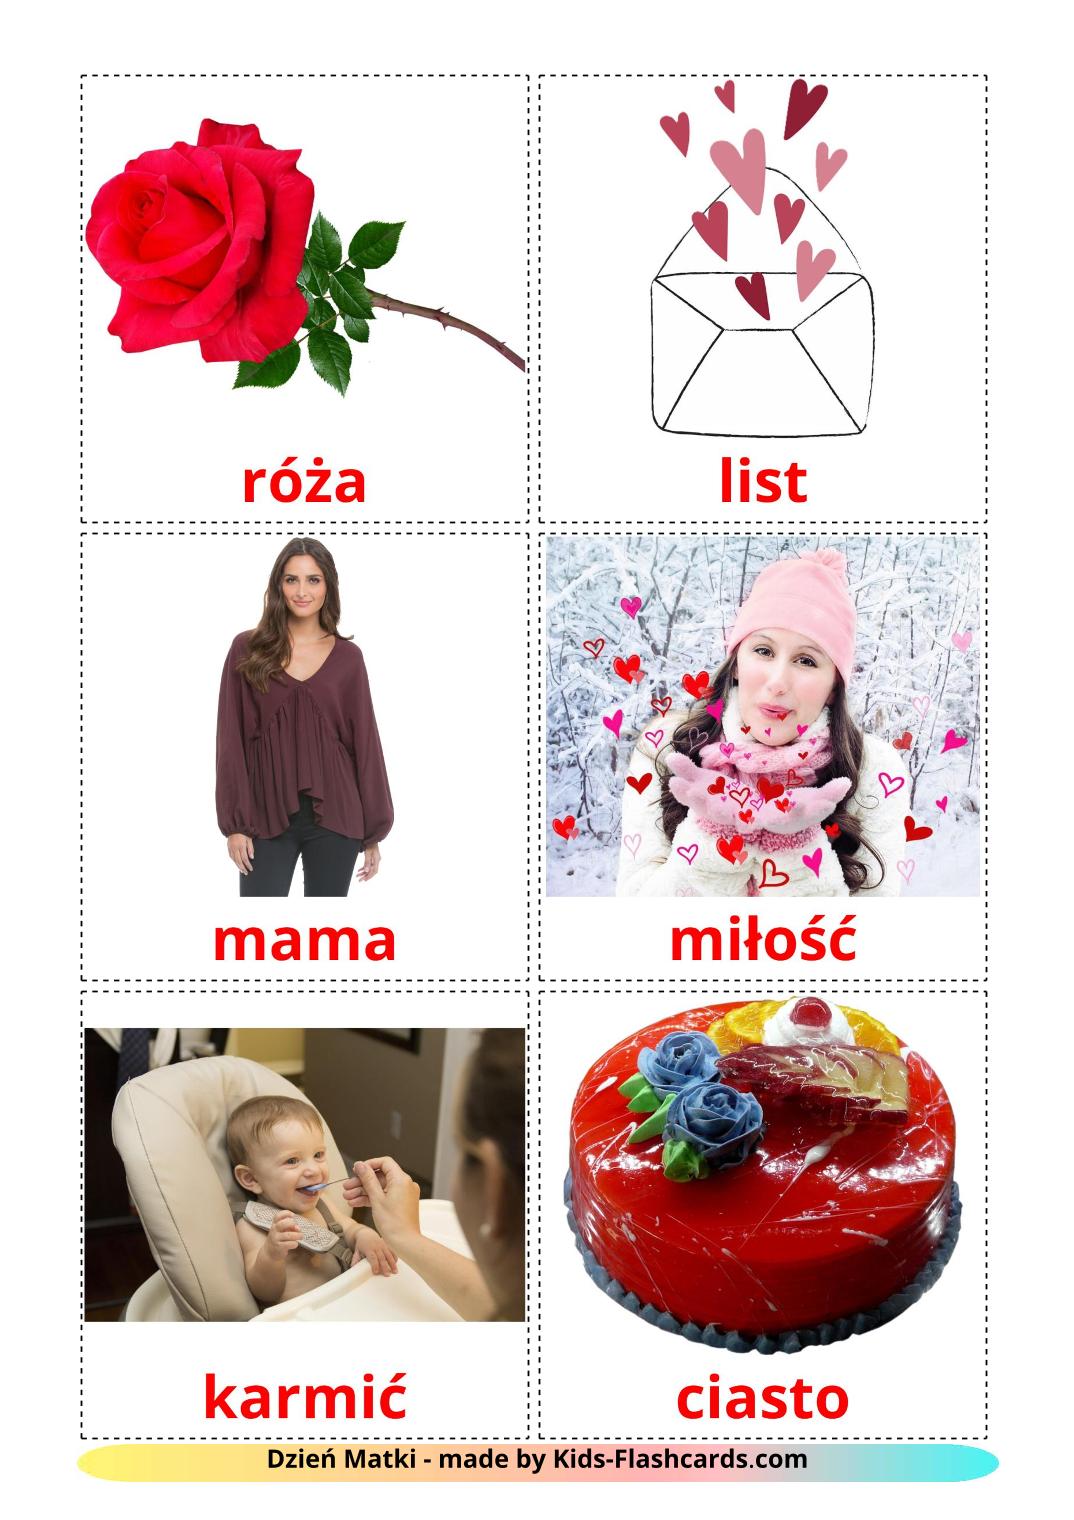 Dia das Mães - 25 Flashcards polimentoes gratuitos para impressão